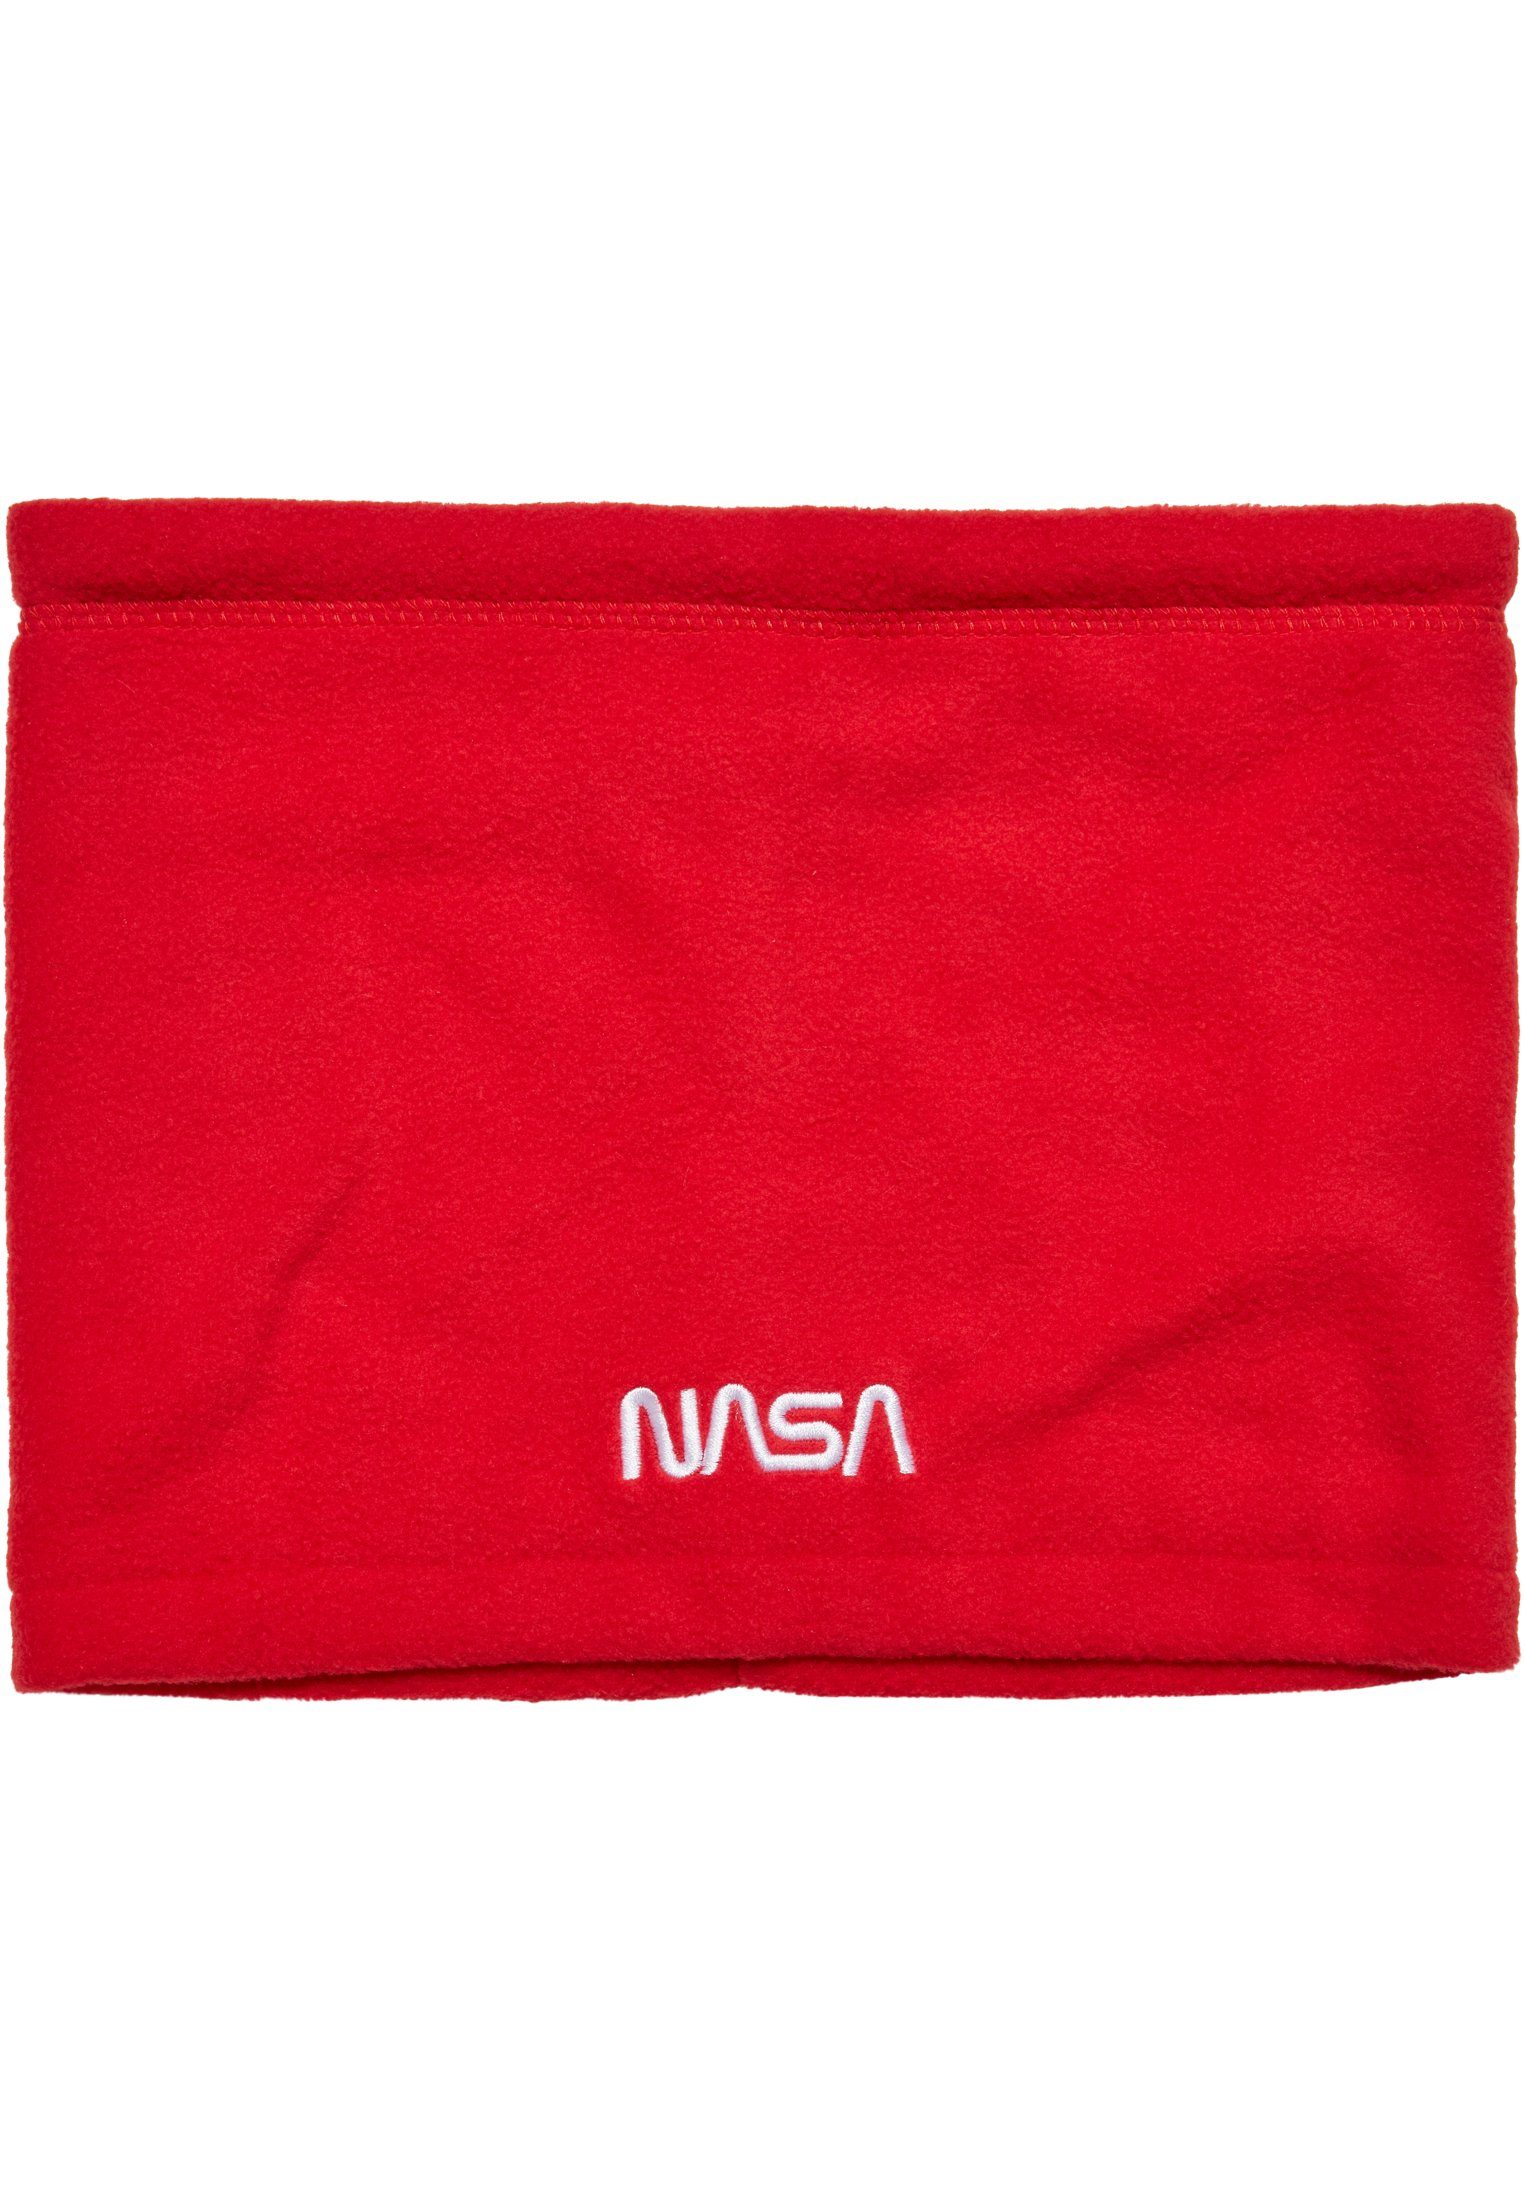 Mister red MisterTee Tee Accessoires Set NASA Baumwollhandschuhe Fleece